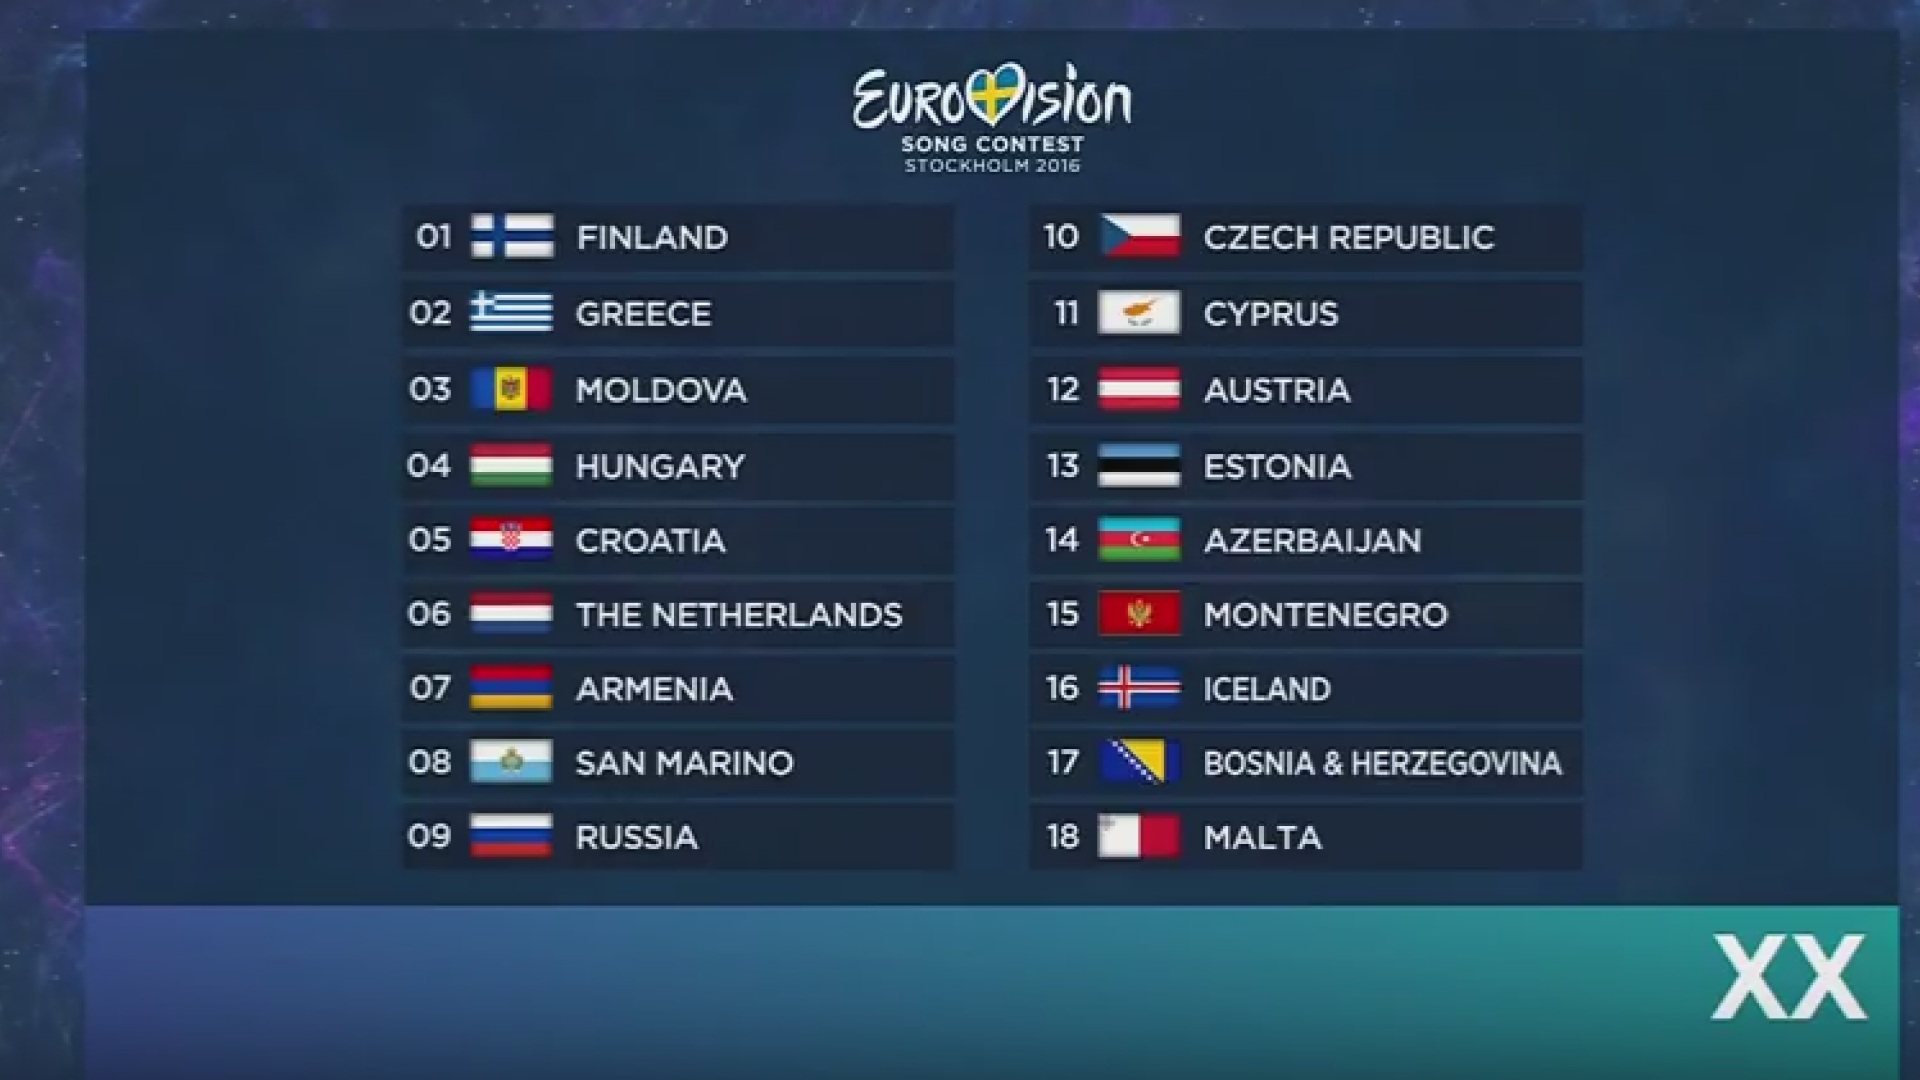 EUROVISION 2016